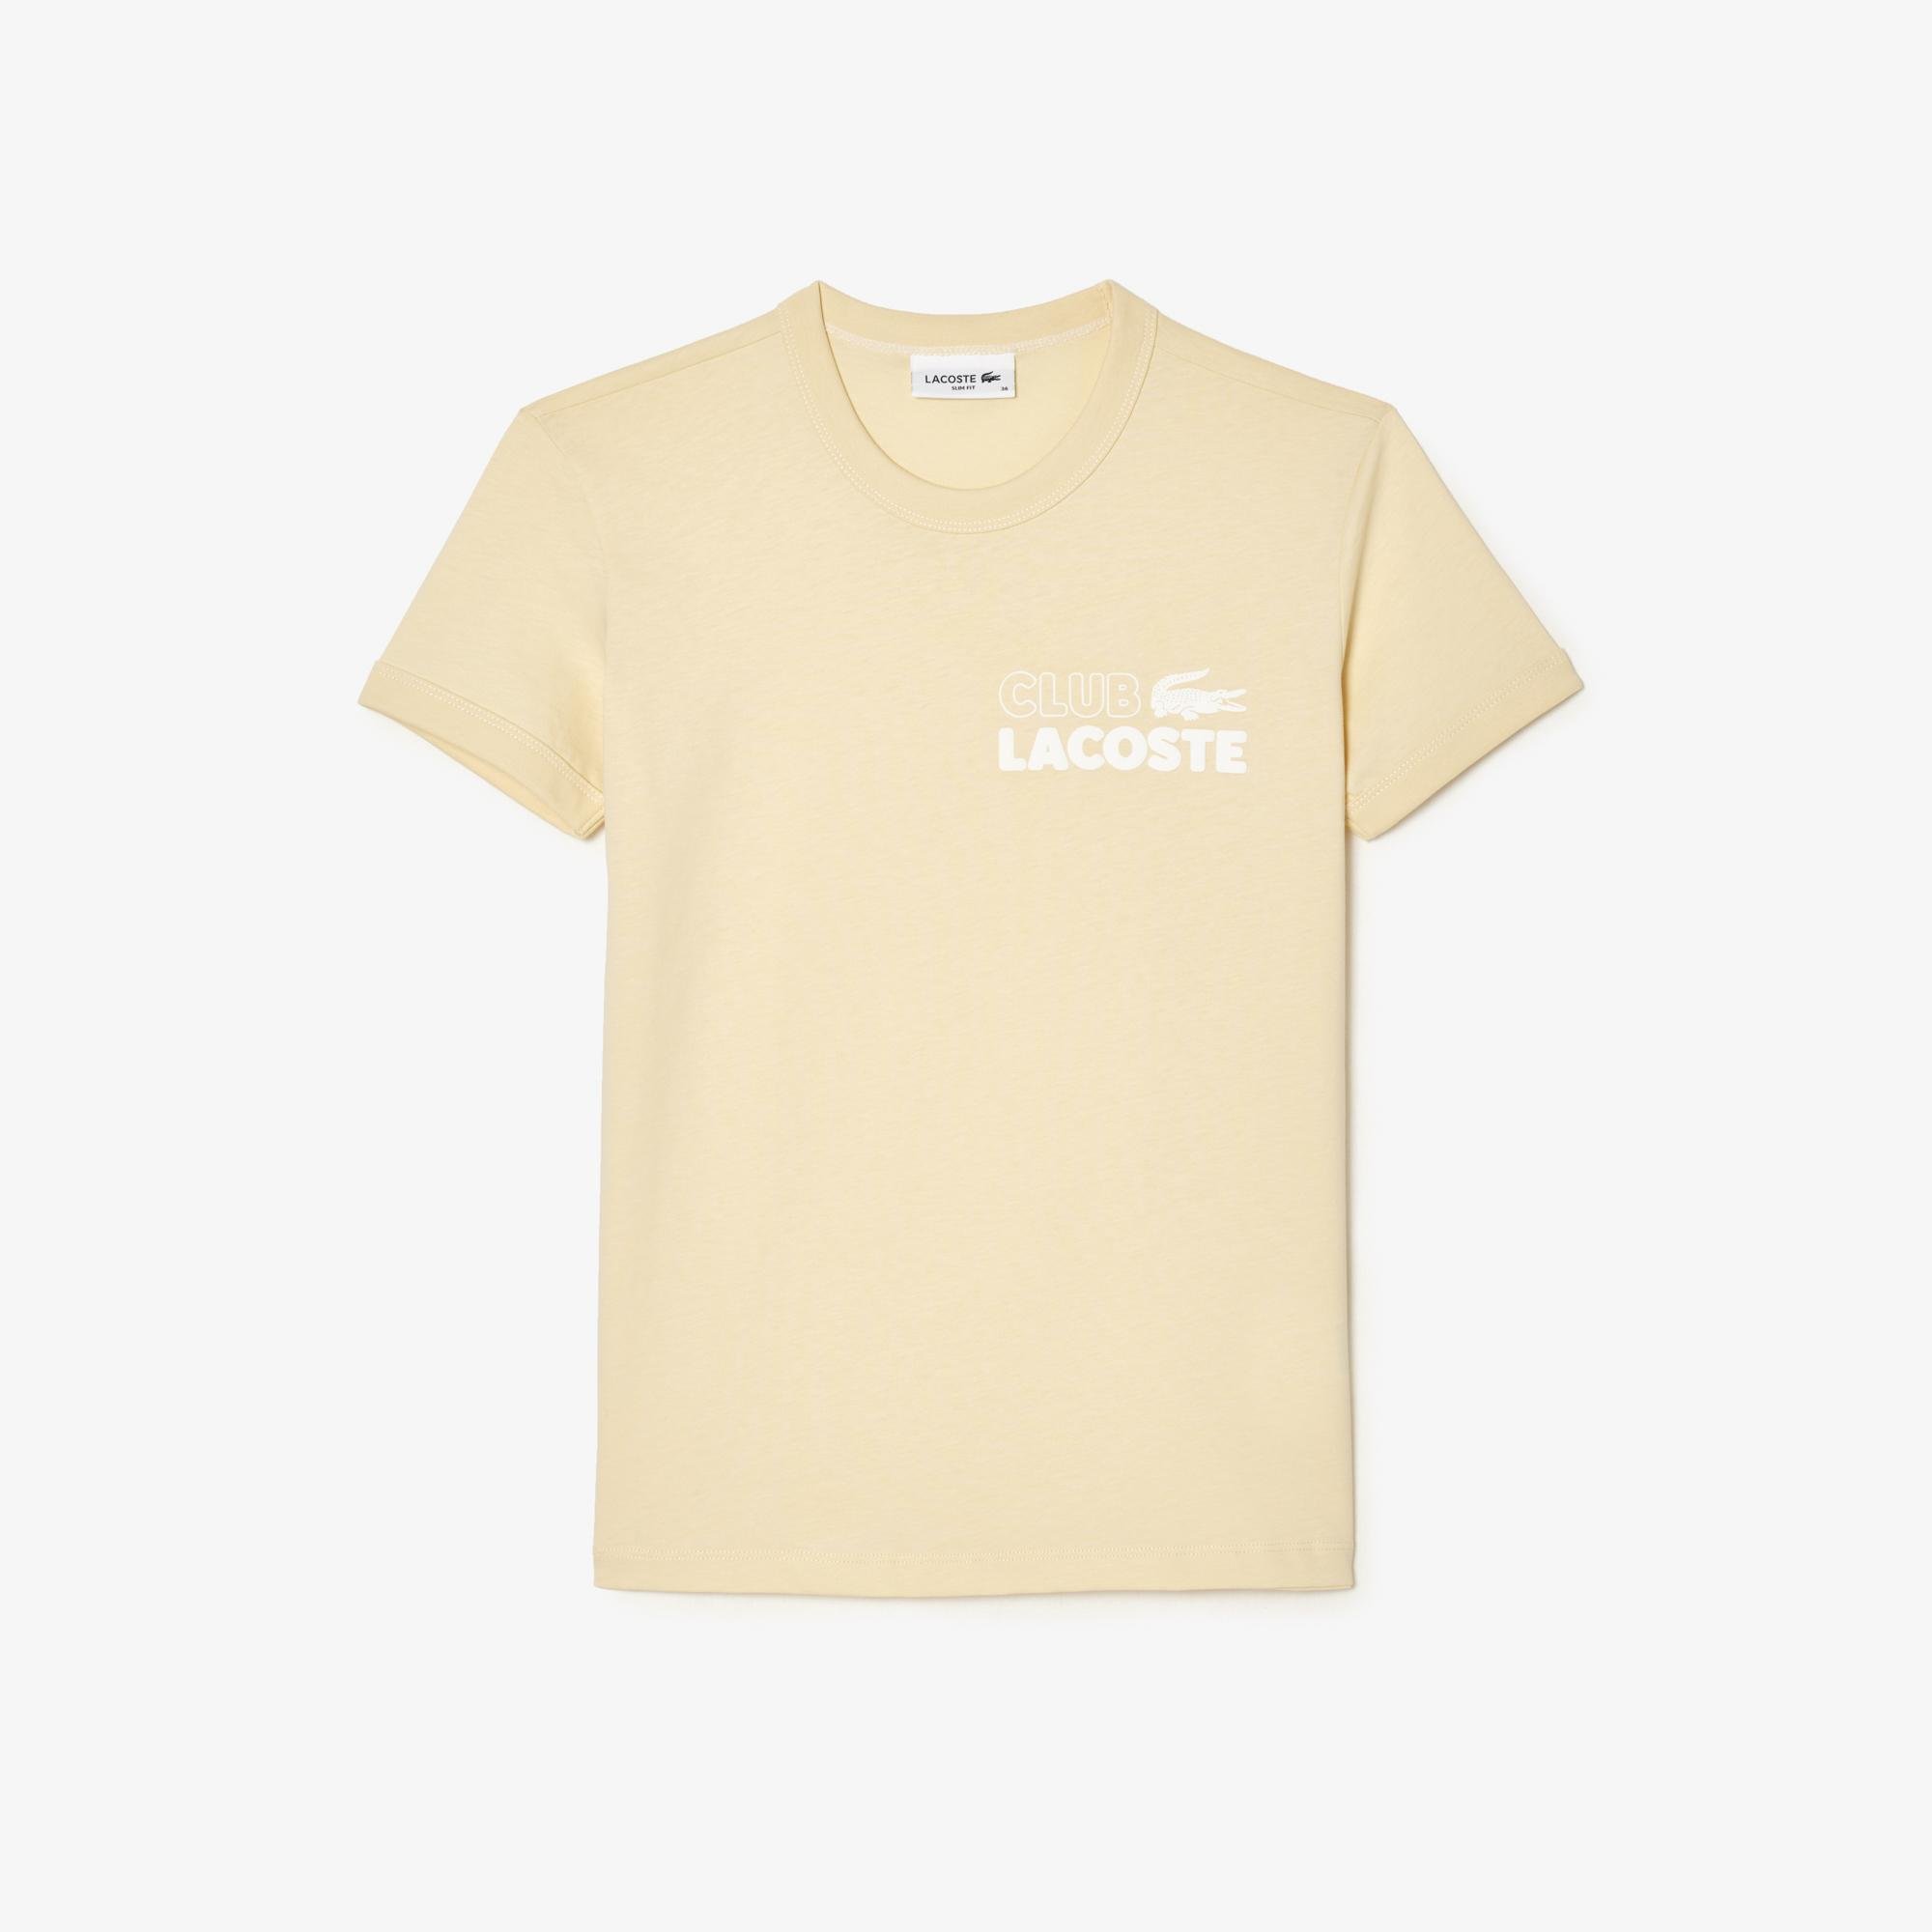 Lacoste damski T-shirt z dżerseju z bawełny organicznej Slim Fit